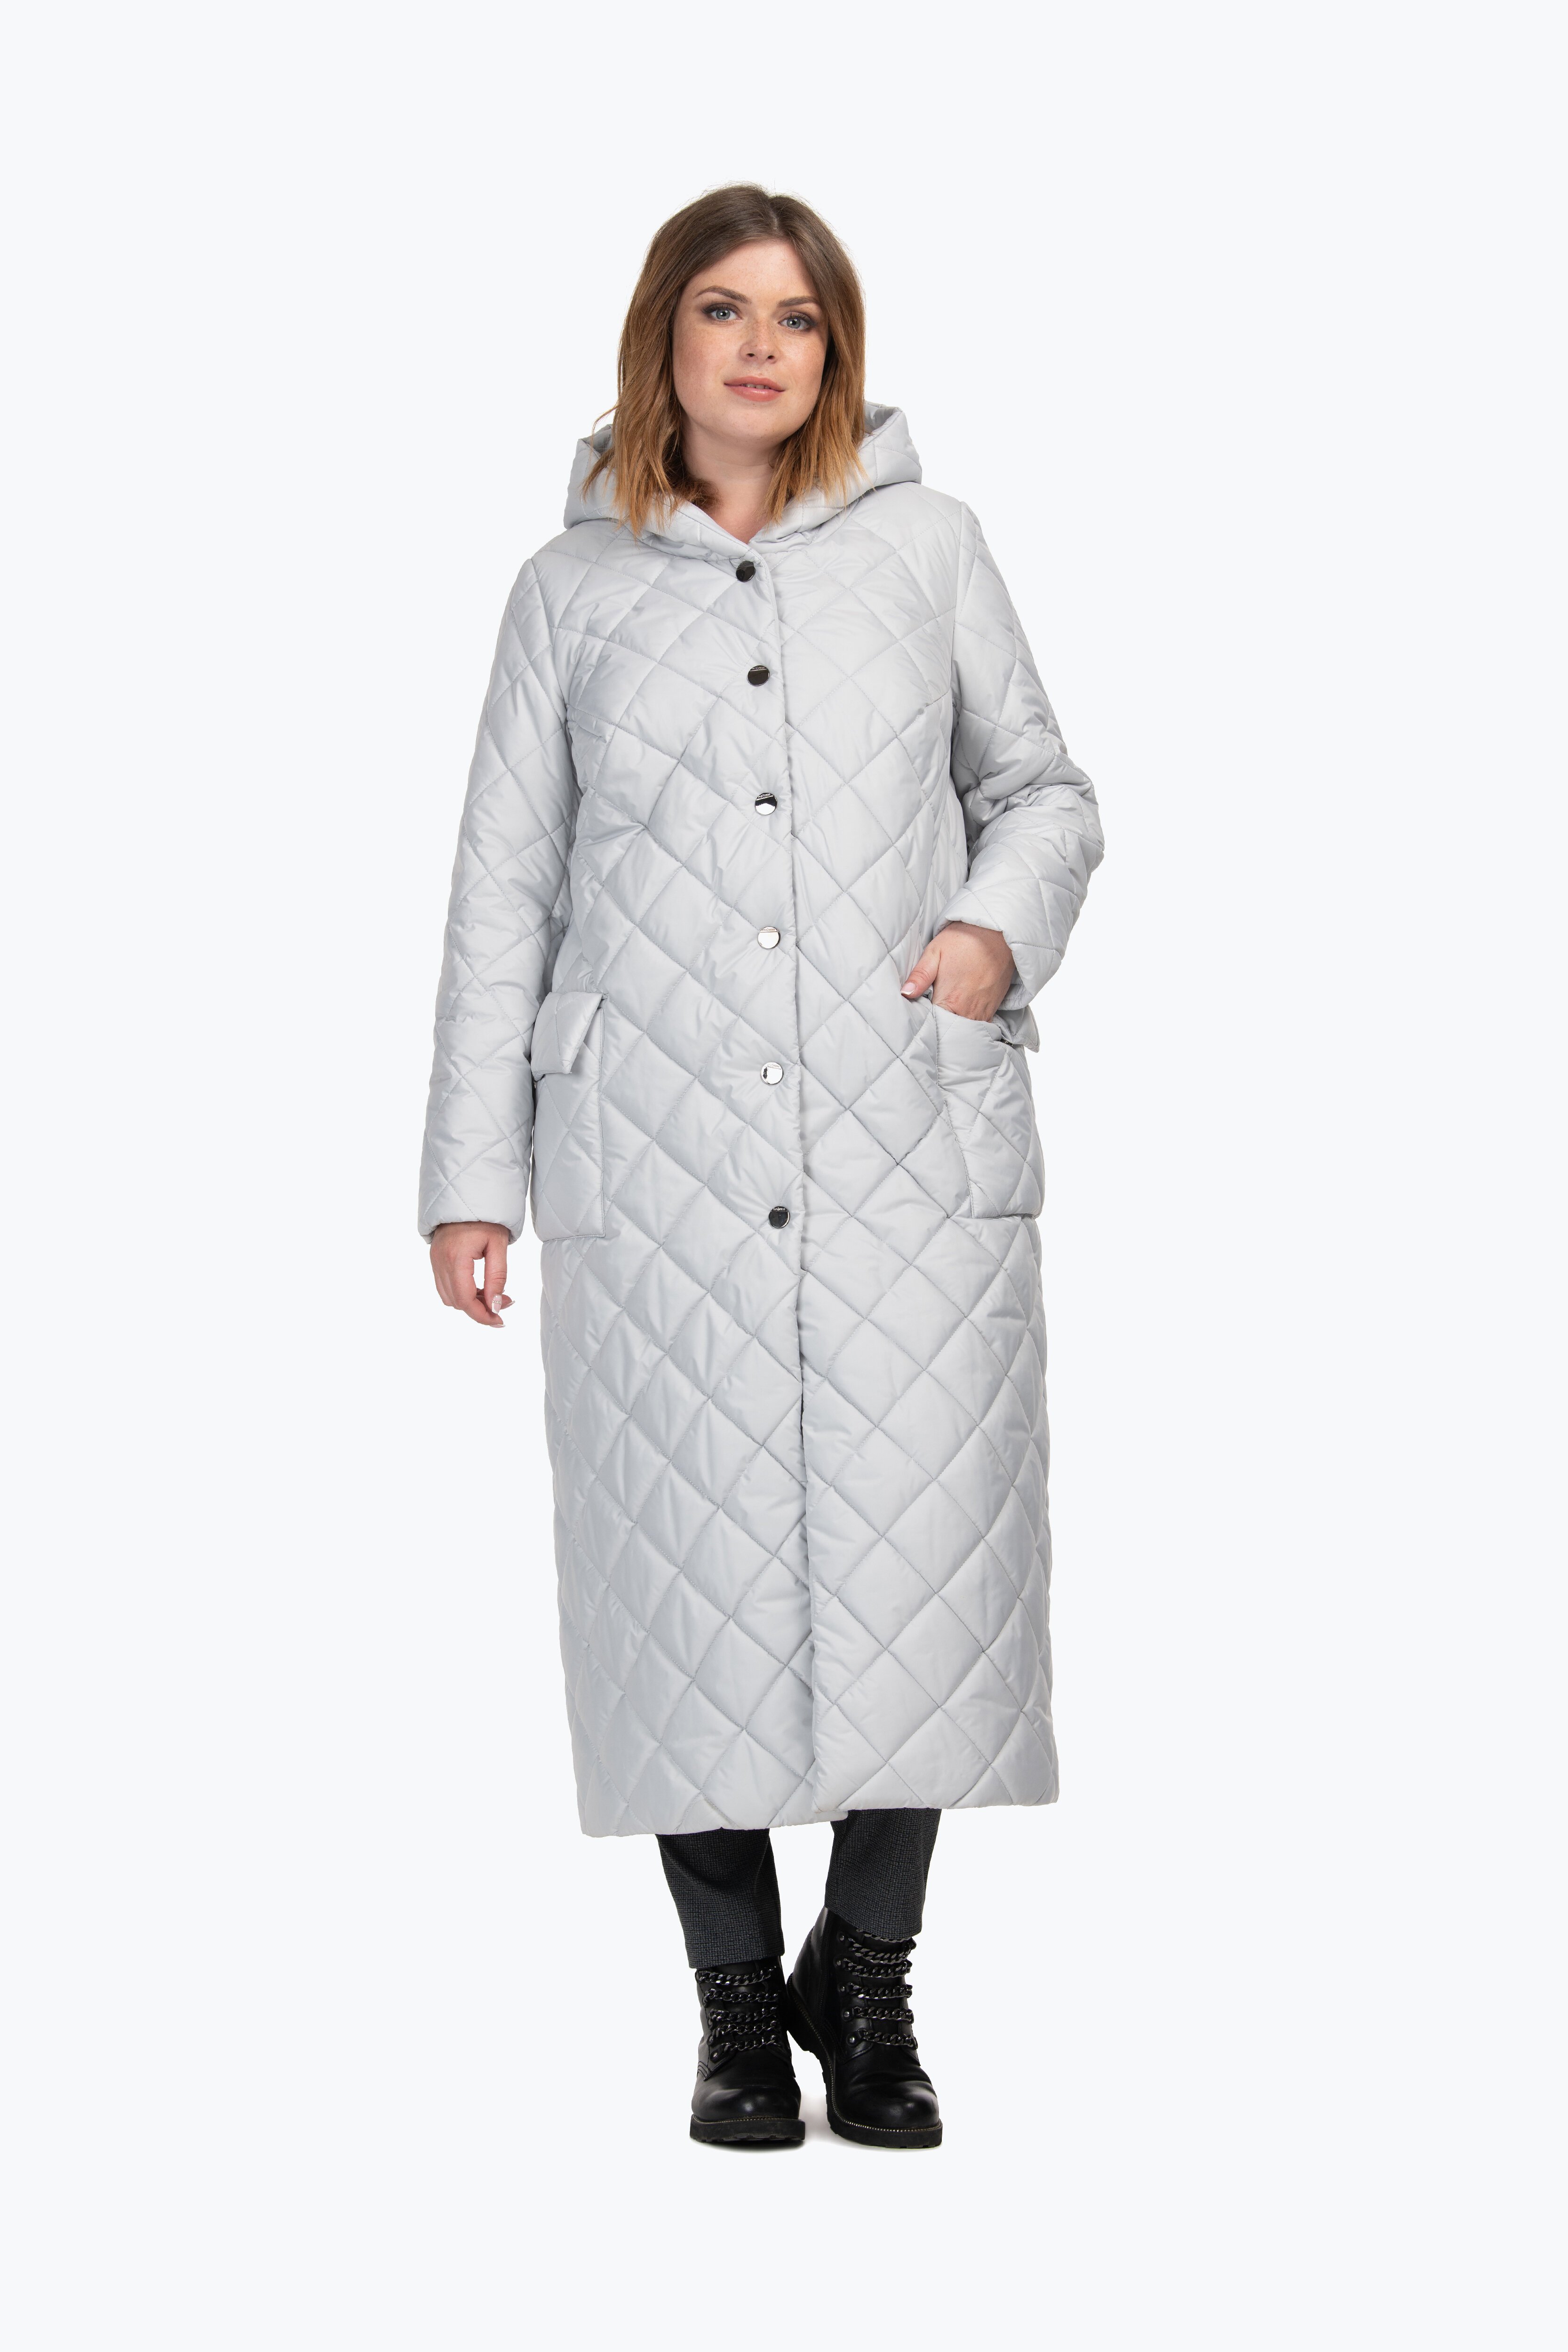 Пальто болоньевое стеганое женское демисезонное 56 размер